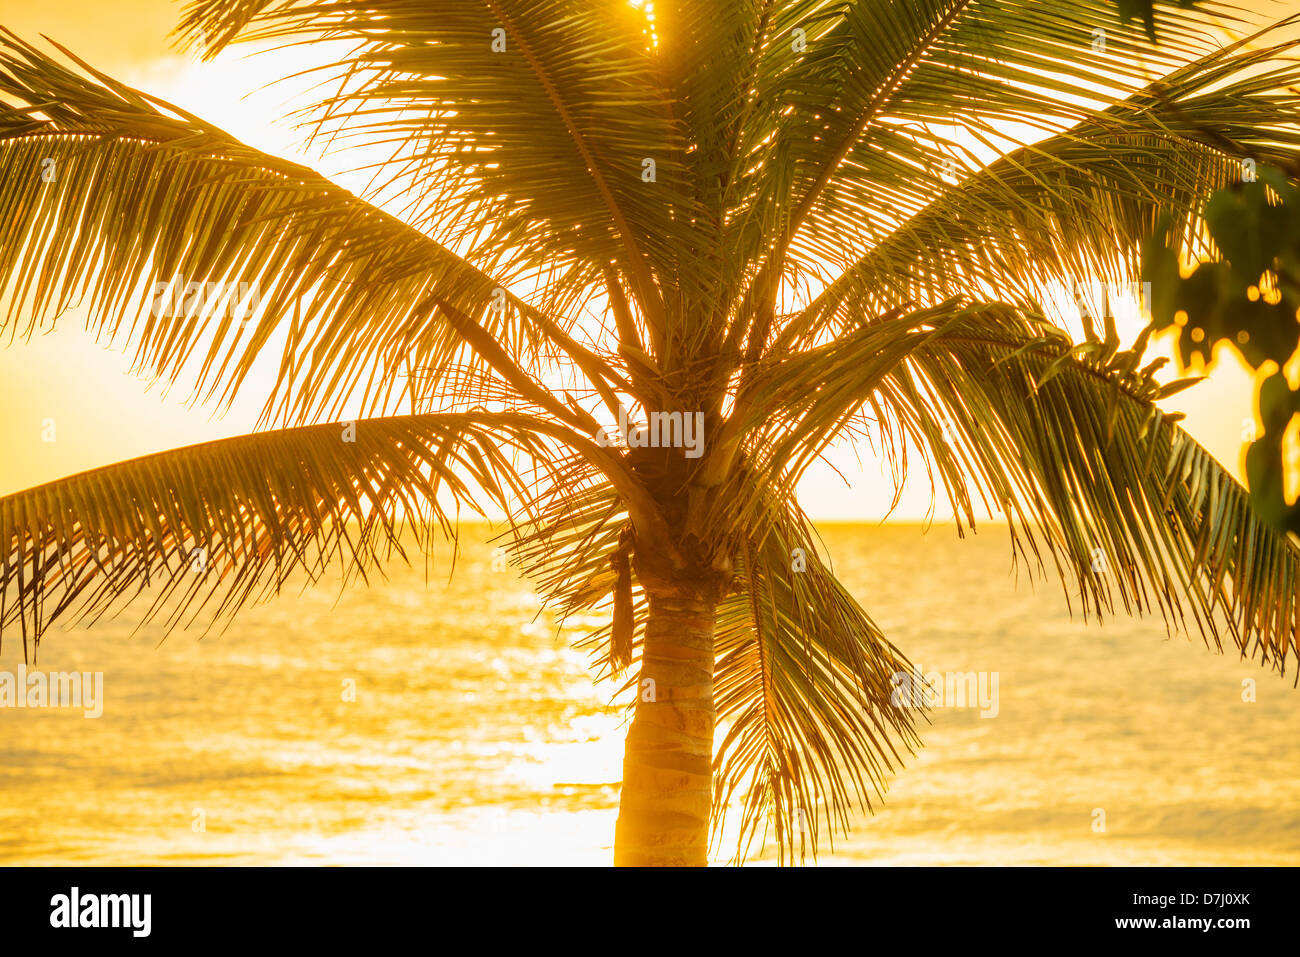 Jamaica, Silhouette of palm tree Stock Photo